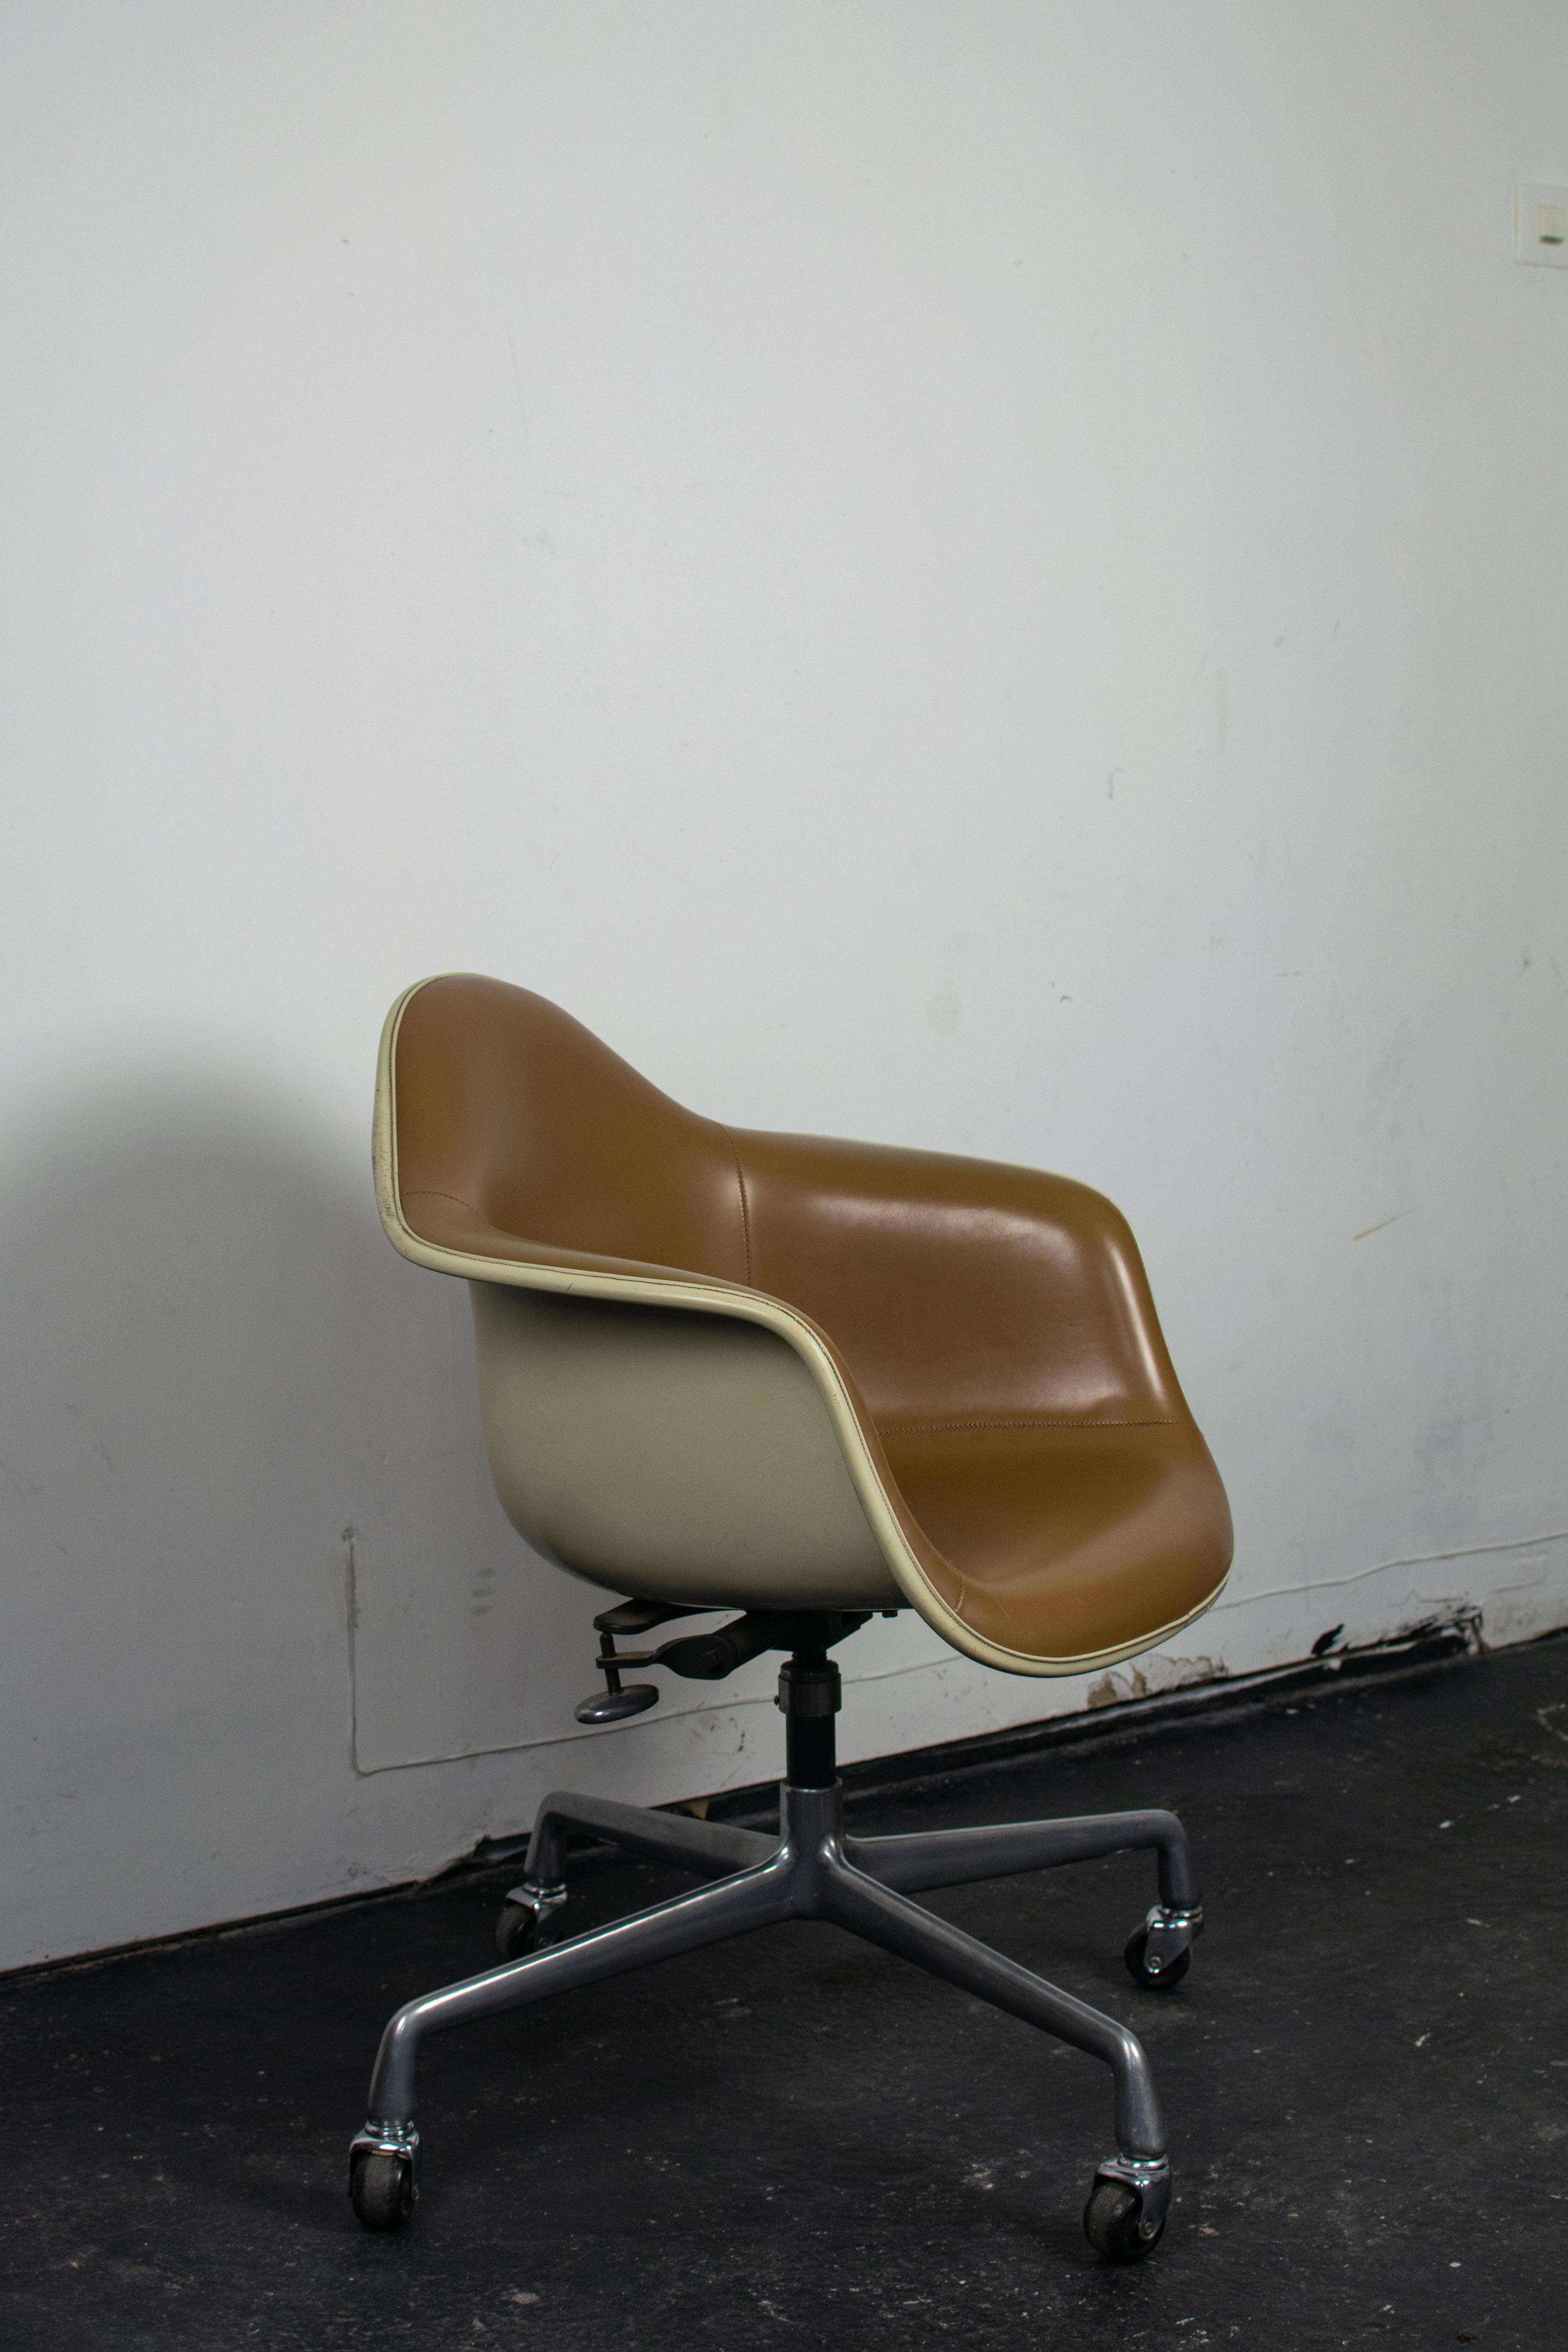 Cette chaise DAT-2 par Charles & Ray Eames pour Herman Miller est un fauteuil de bureau pivotant mis sur le marché par l'américain Herman Miller à la fin des années 1950 et produit jusqu'à la fin de la série de chaises en fibre de verre en 1993.